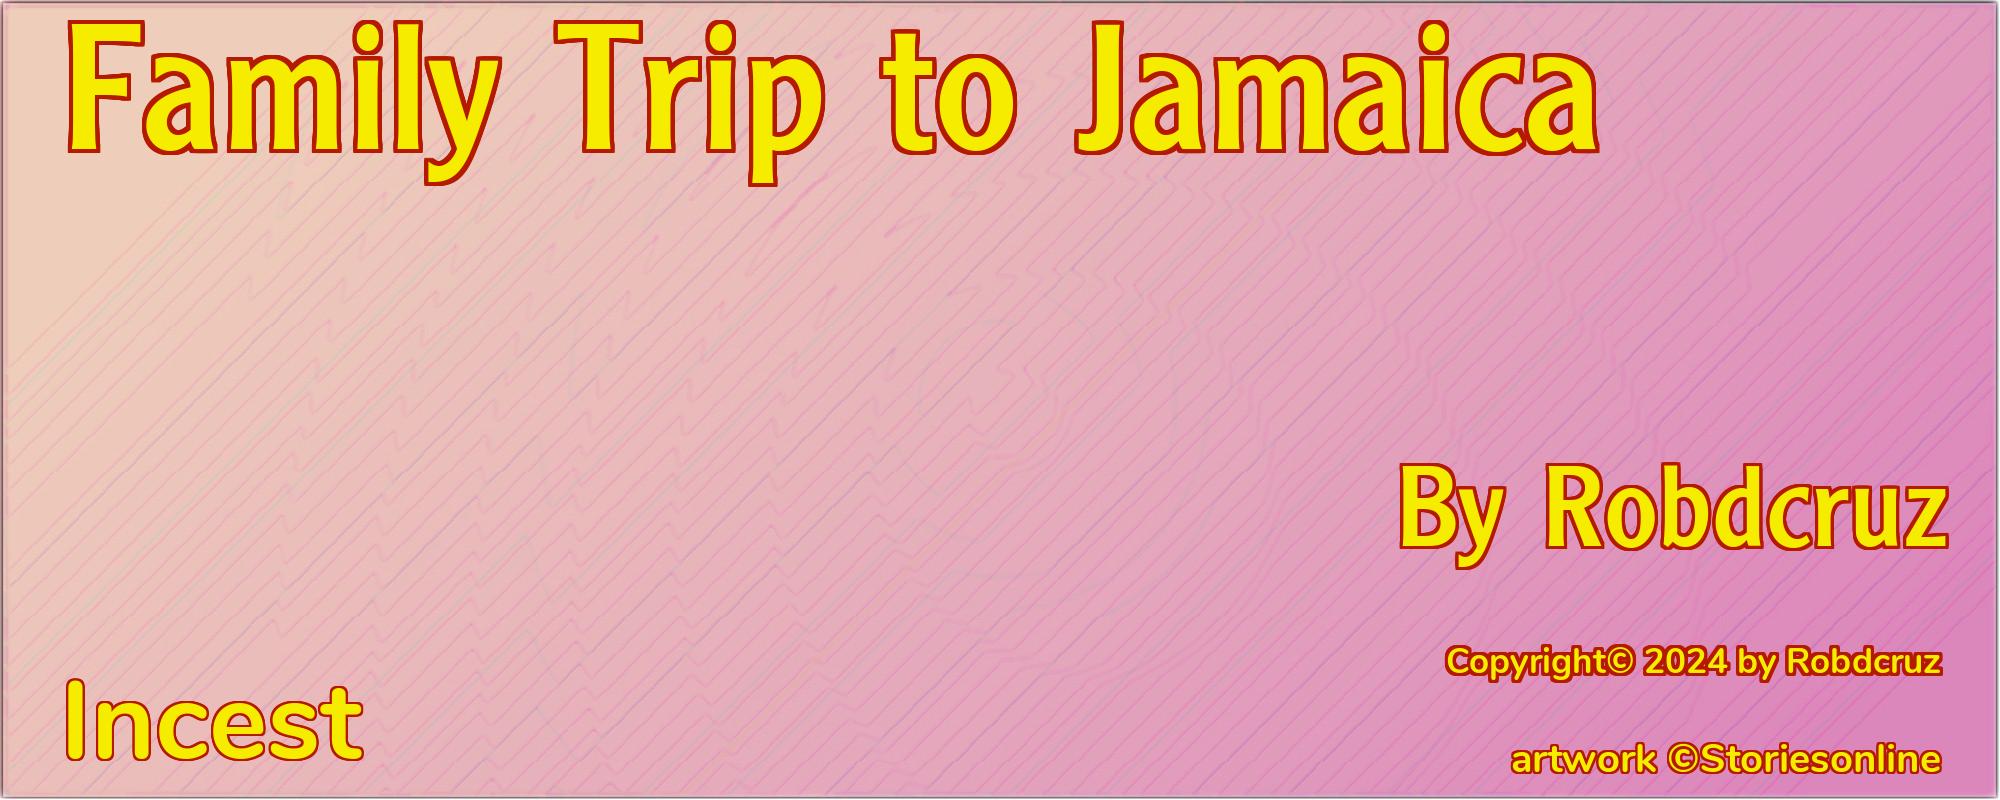 Family Trip to Jamaica - Cover